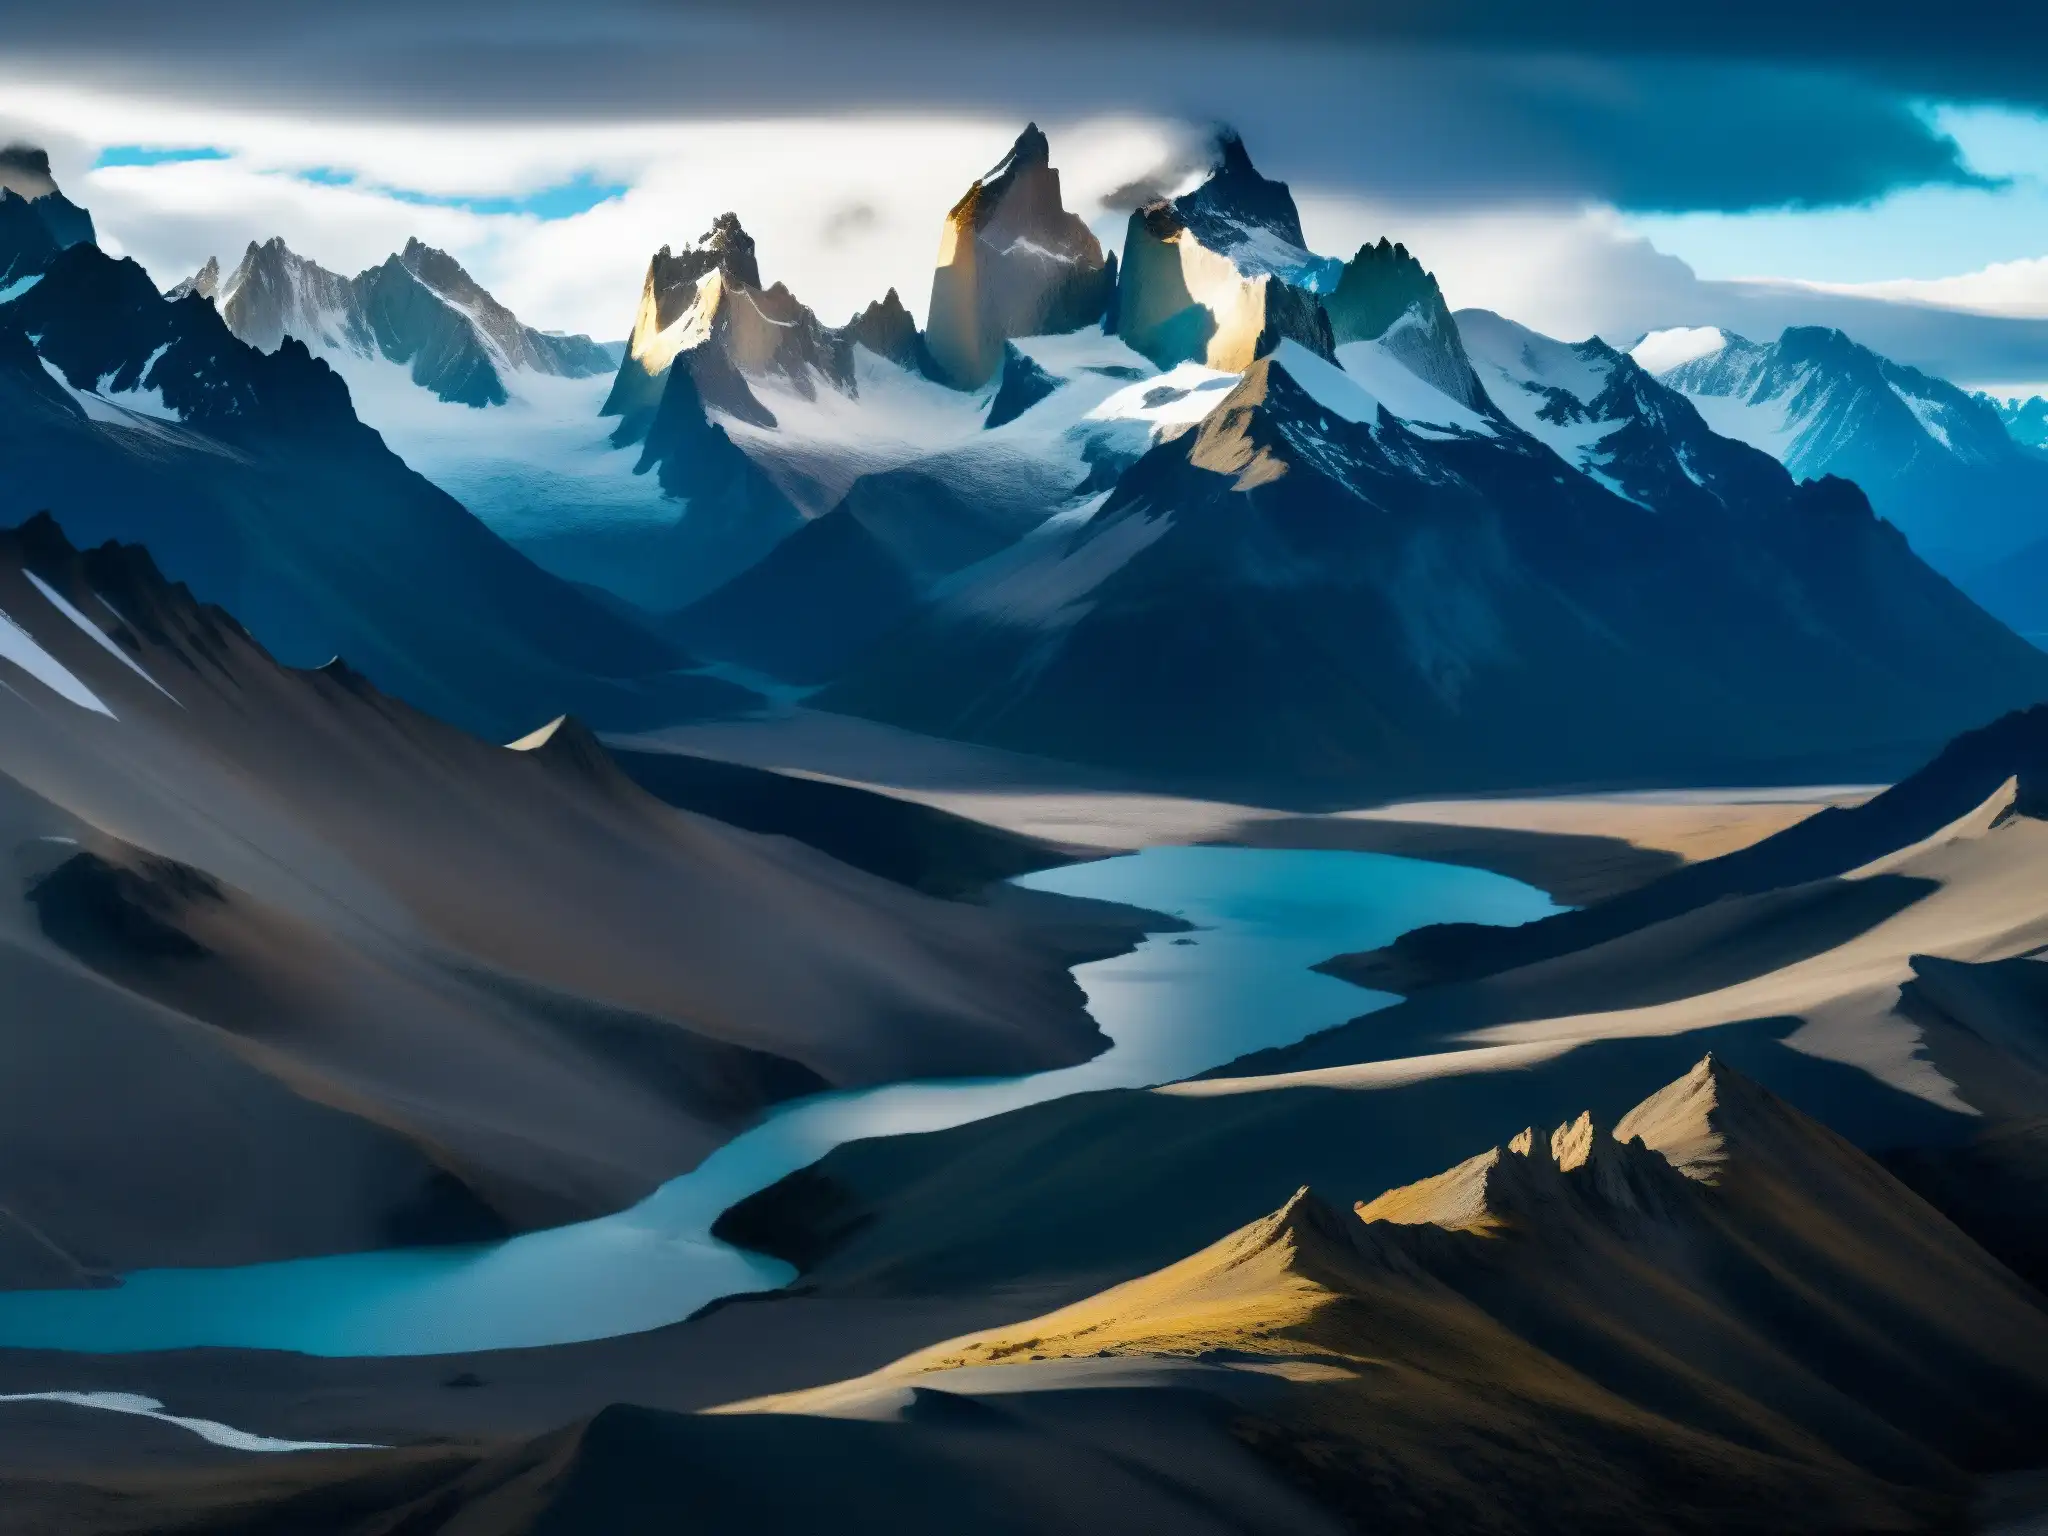 Imagen impresionante del paisaje agreste y ventoso de la región de la Patagonia, con su atmósfera mítica y grandiosa